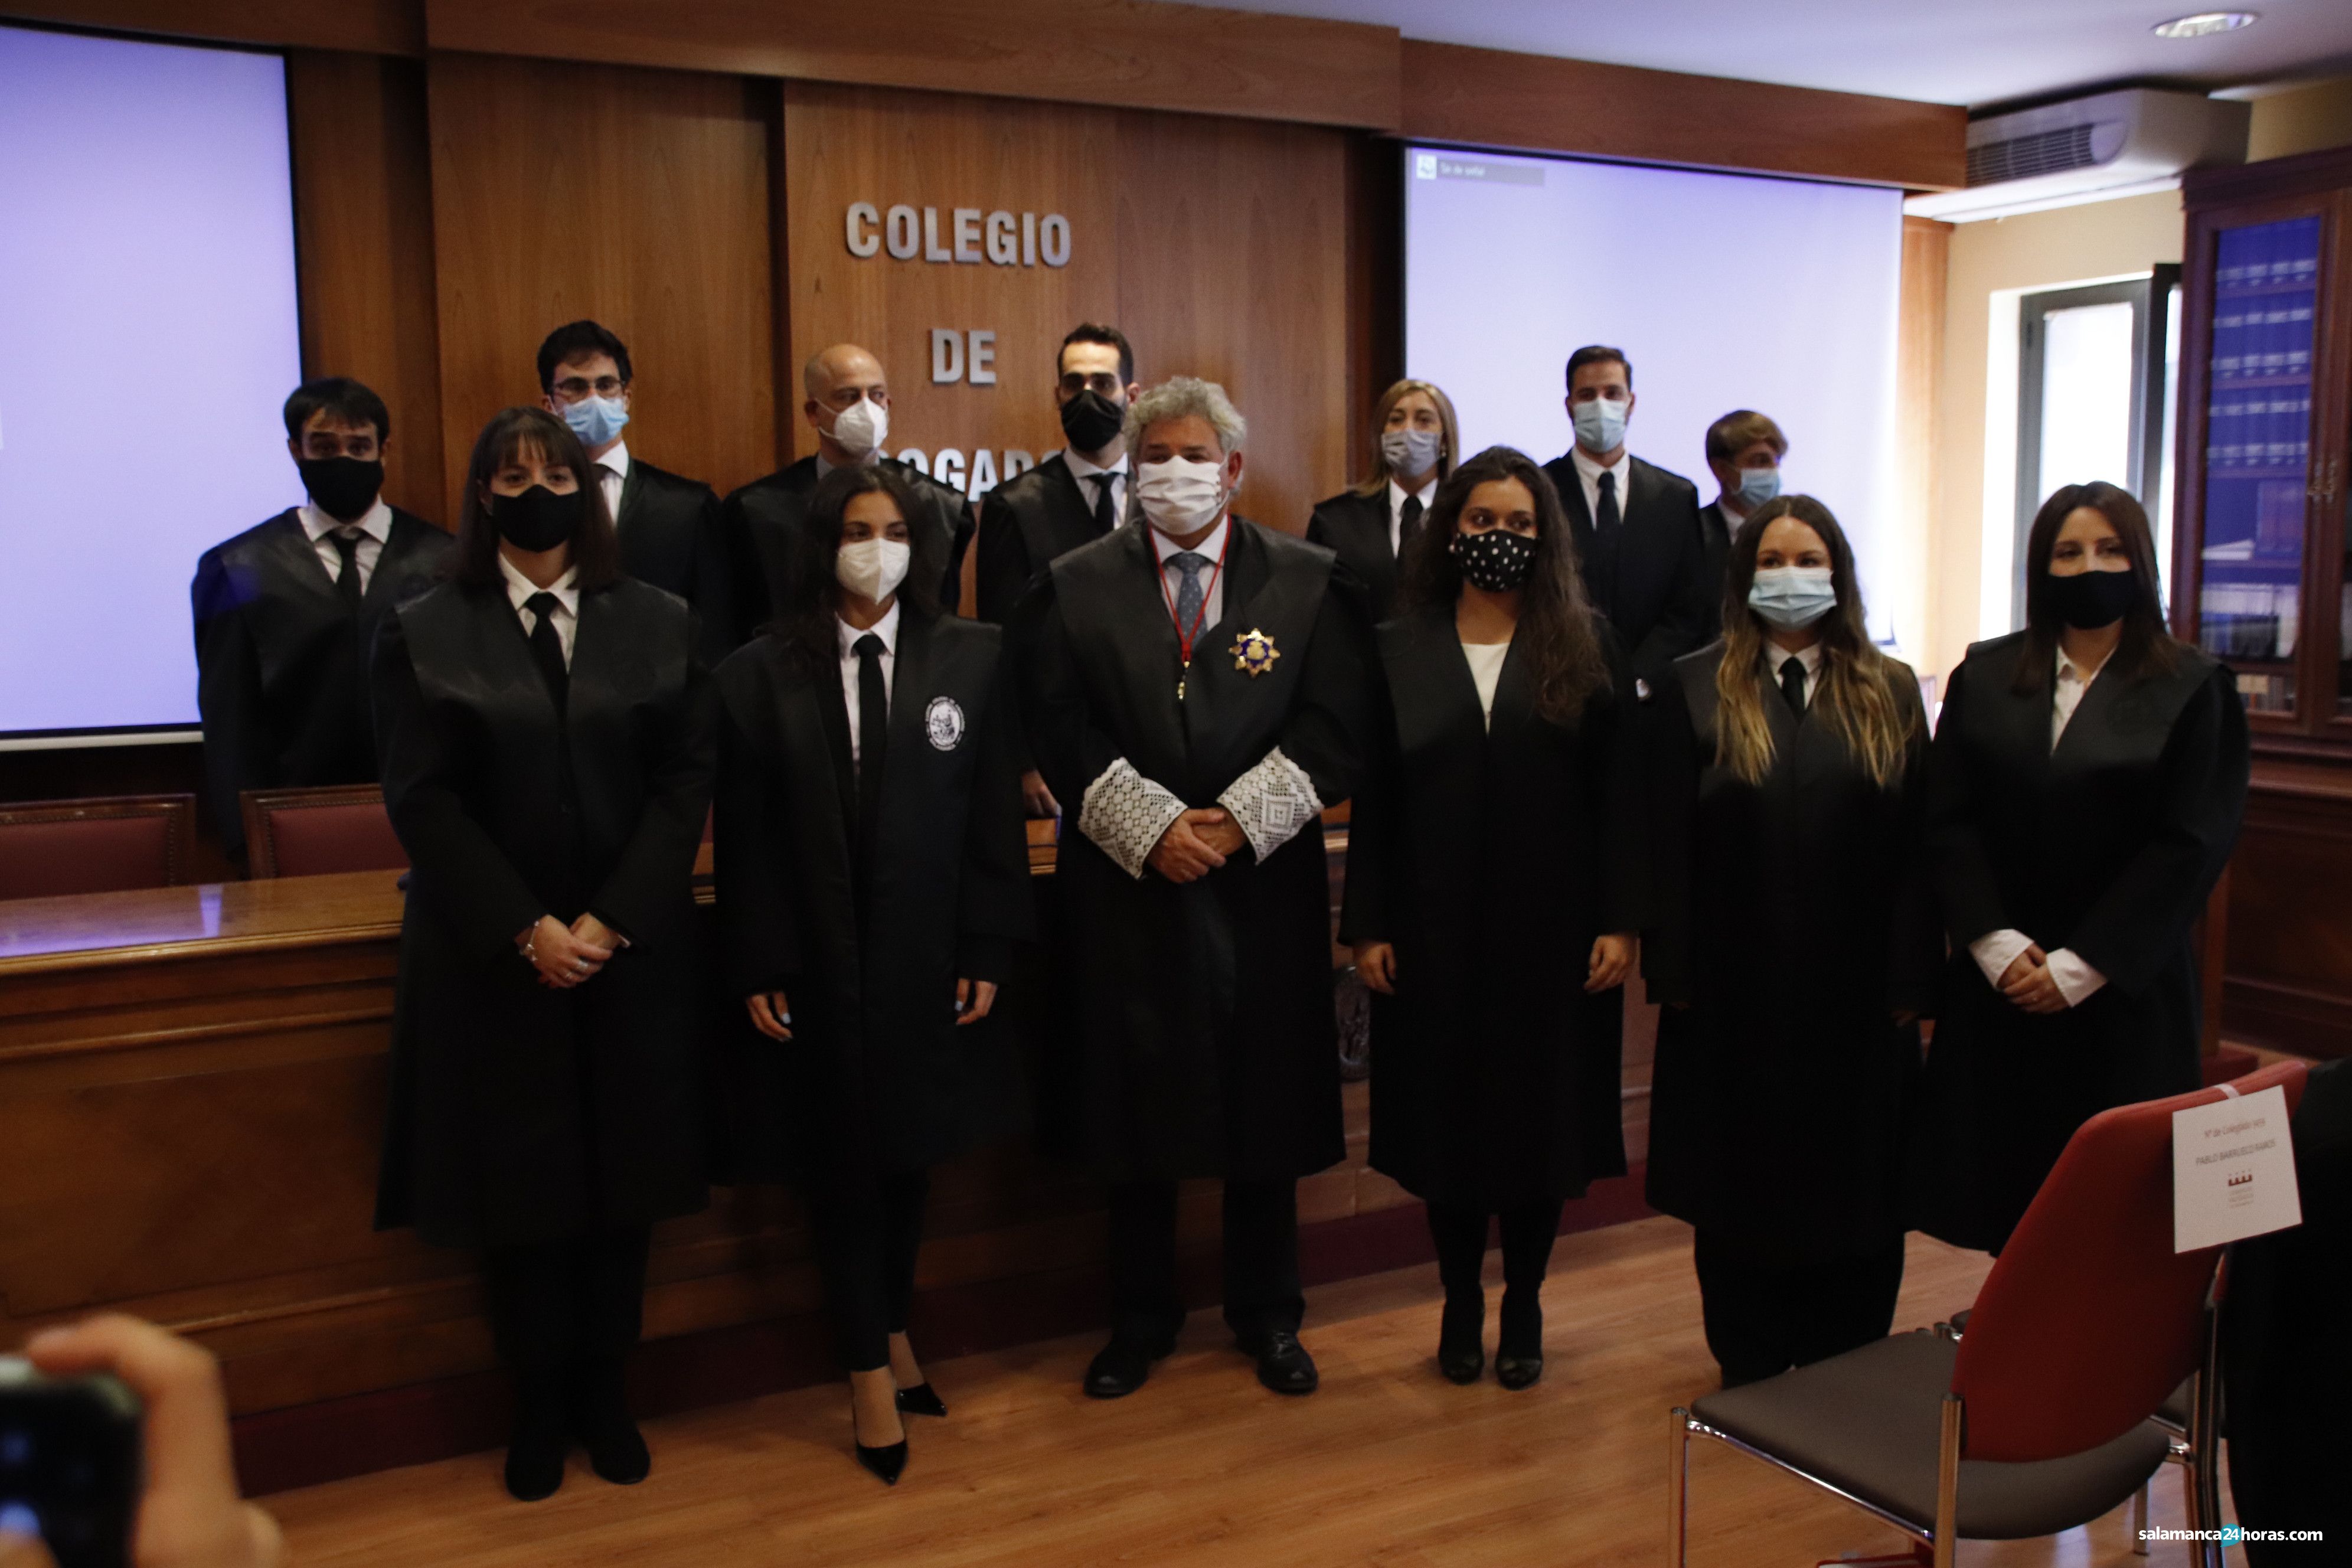  Última jura de nuevos letrados en el Colegio de Abogados de Salamanca